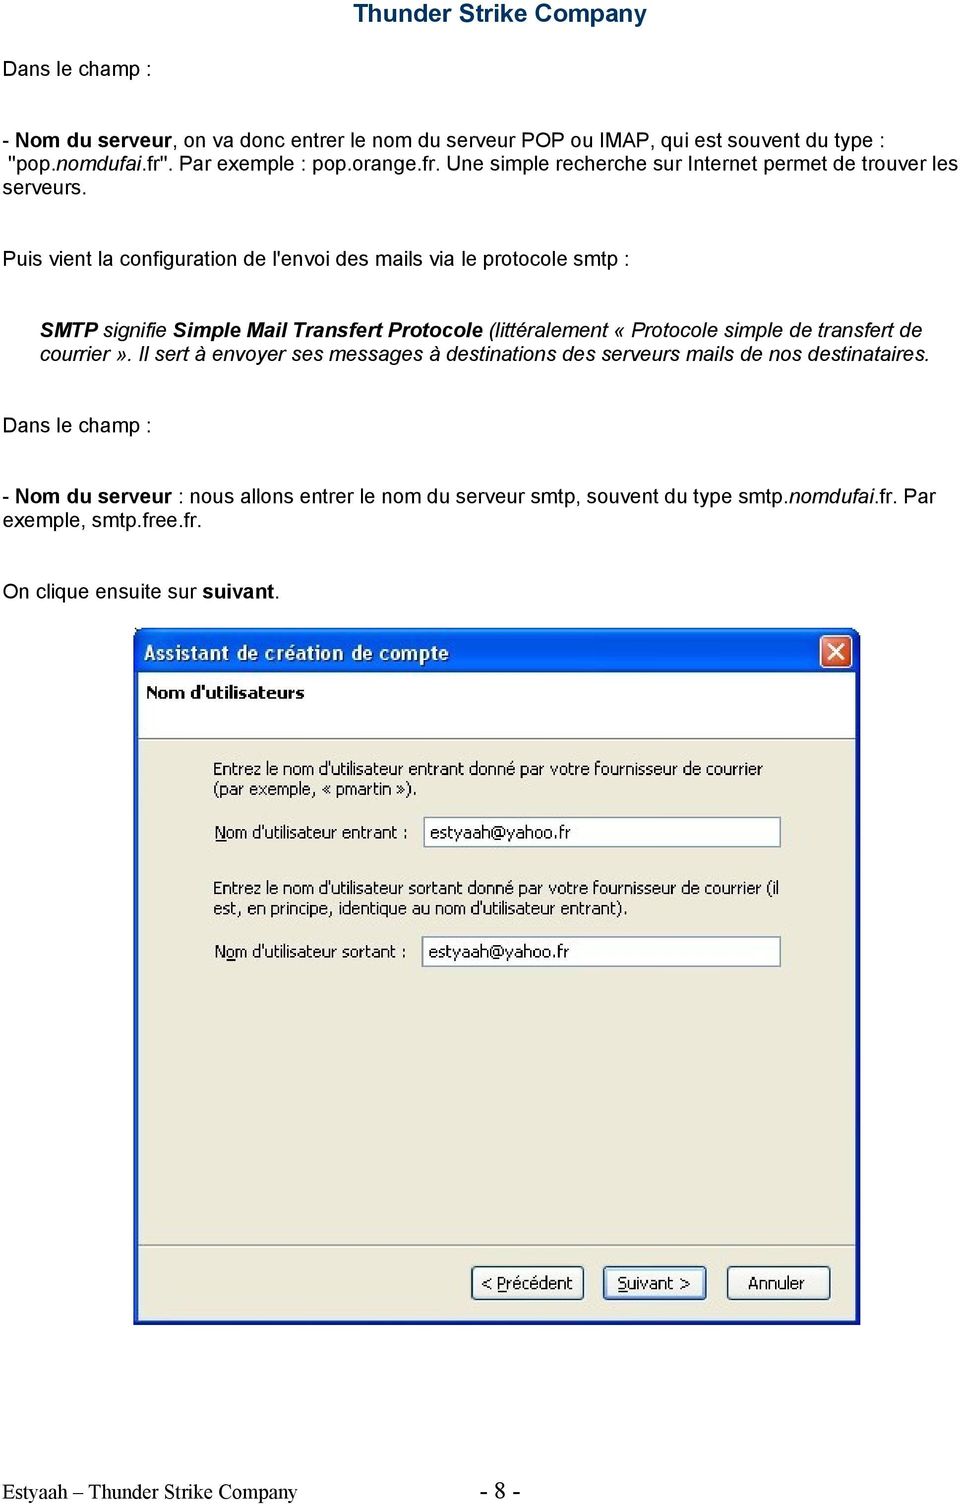 Puis vient la configuration de l'envoi des mails via le protocole smtp : SMTP signifie Simple Mail Transfert Protocole (littéralement «Protocole simple de transfert de